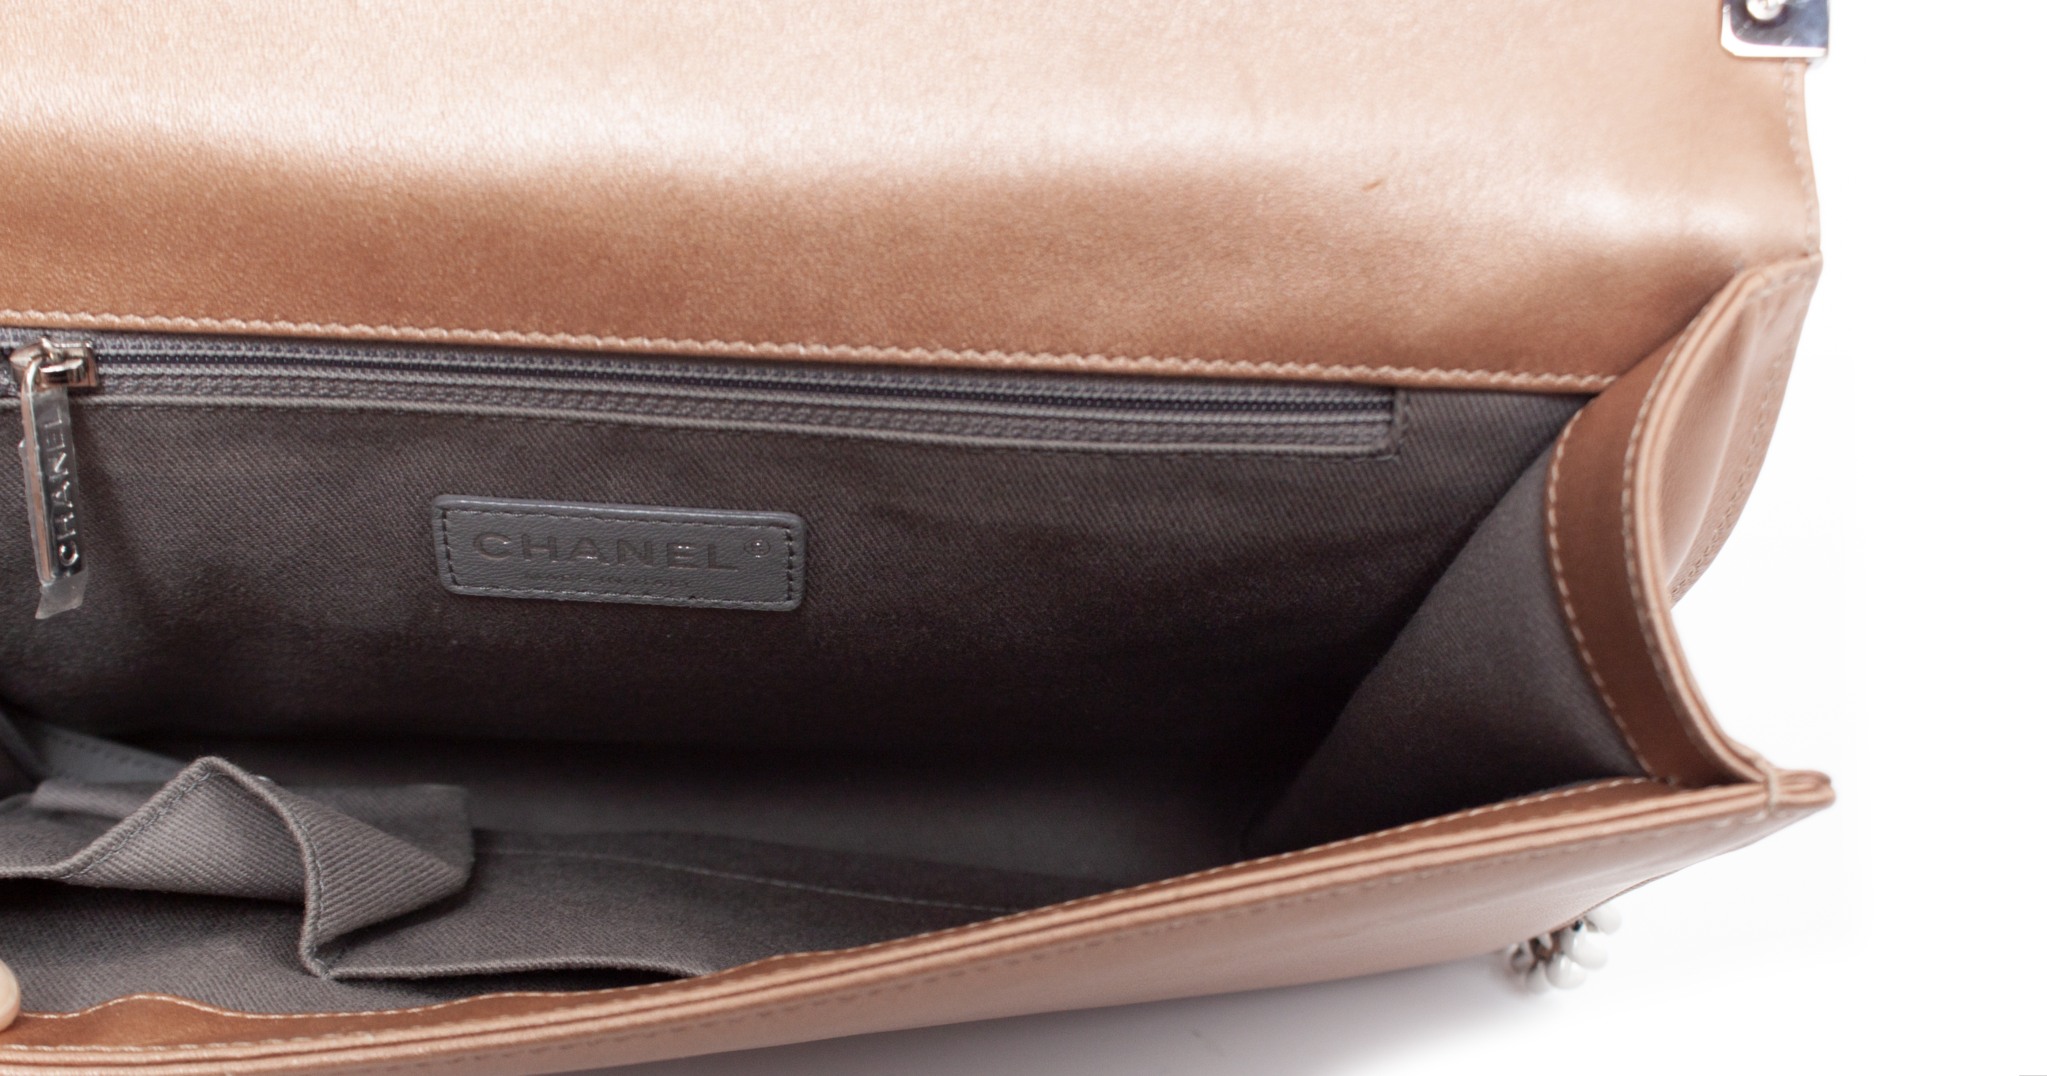 Chanel, Metallic large leather boy bag - Unique Designer Pieces